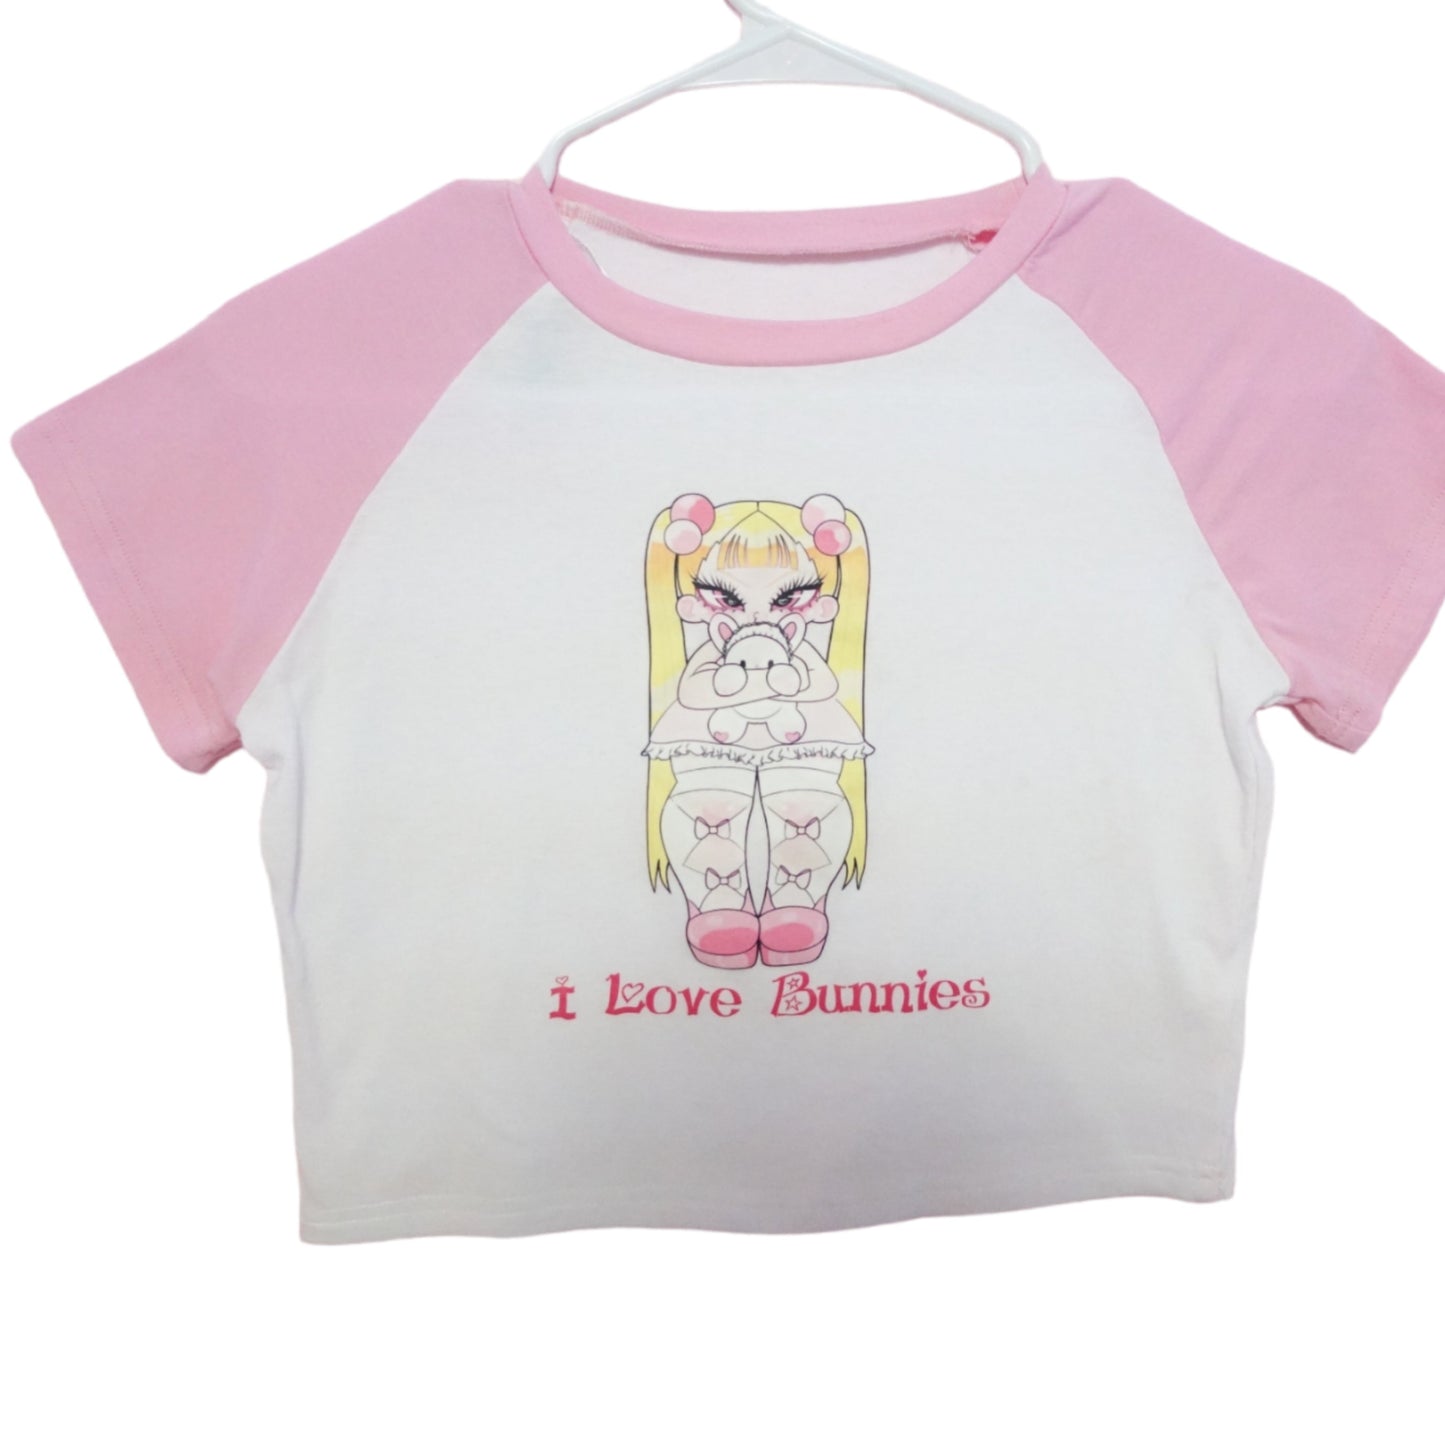 I love Bunnies size medium pink shirt